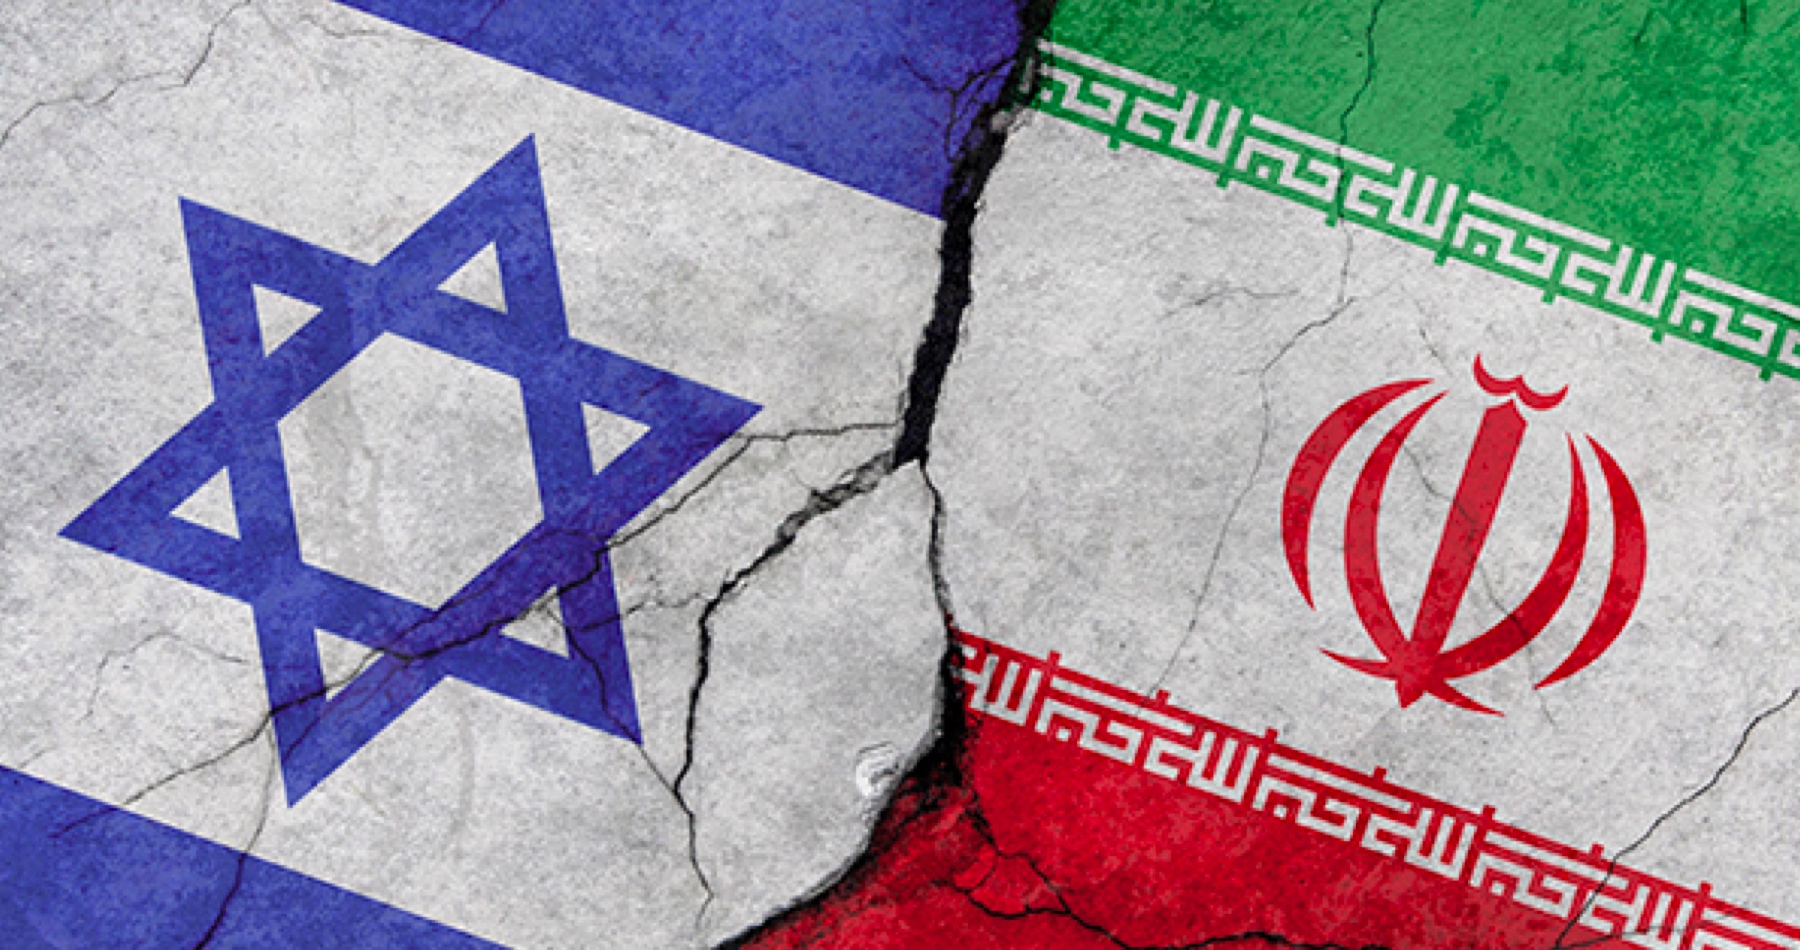 USA posielajú na Blízky východ vojenské posily v obave z odvetného útoku Iránu na Izrael za zabitie dvoch iránskych generálov.  Možnosť priameho vojenského stretu medzi Iránom a Izraelom stavia USA do vojnovej pozície na dvoch frontoch. Libanonské hnutie Hizballáh už vypálilo desiatky rakiet kaťuša na delostrelecké pozície v Izraeli